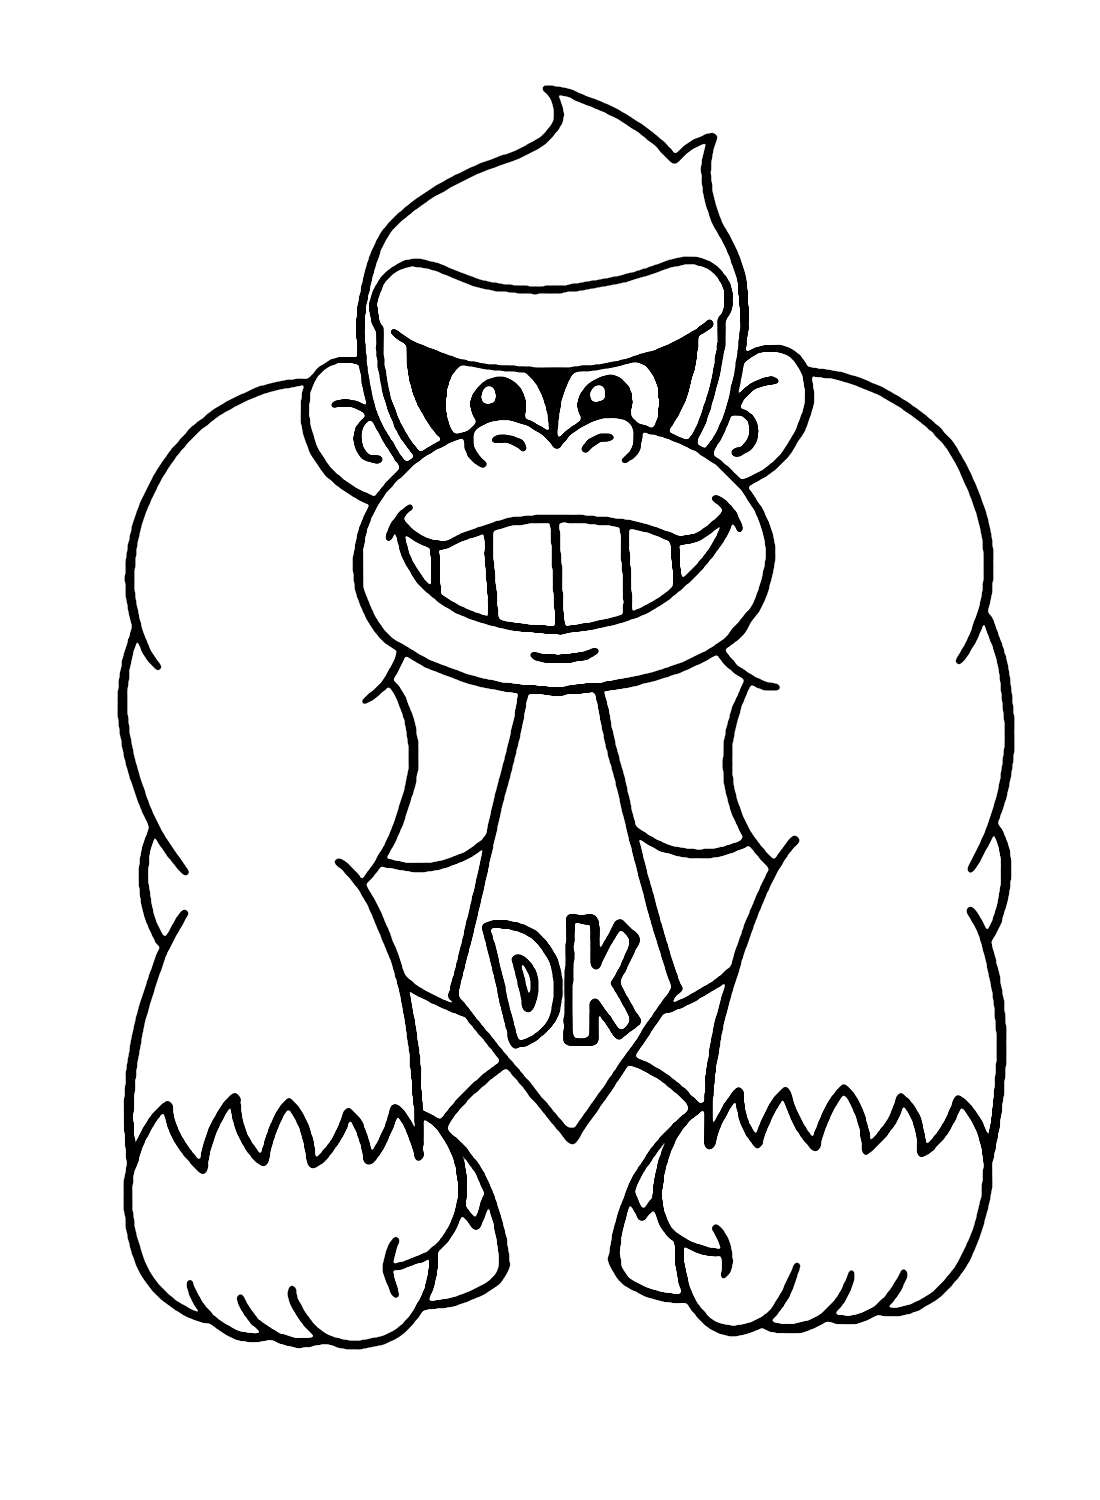 Cute Donkey Kong from Donkey Kong